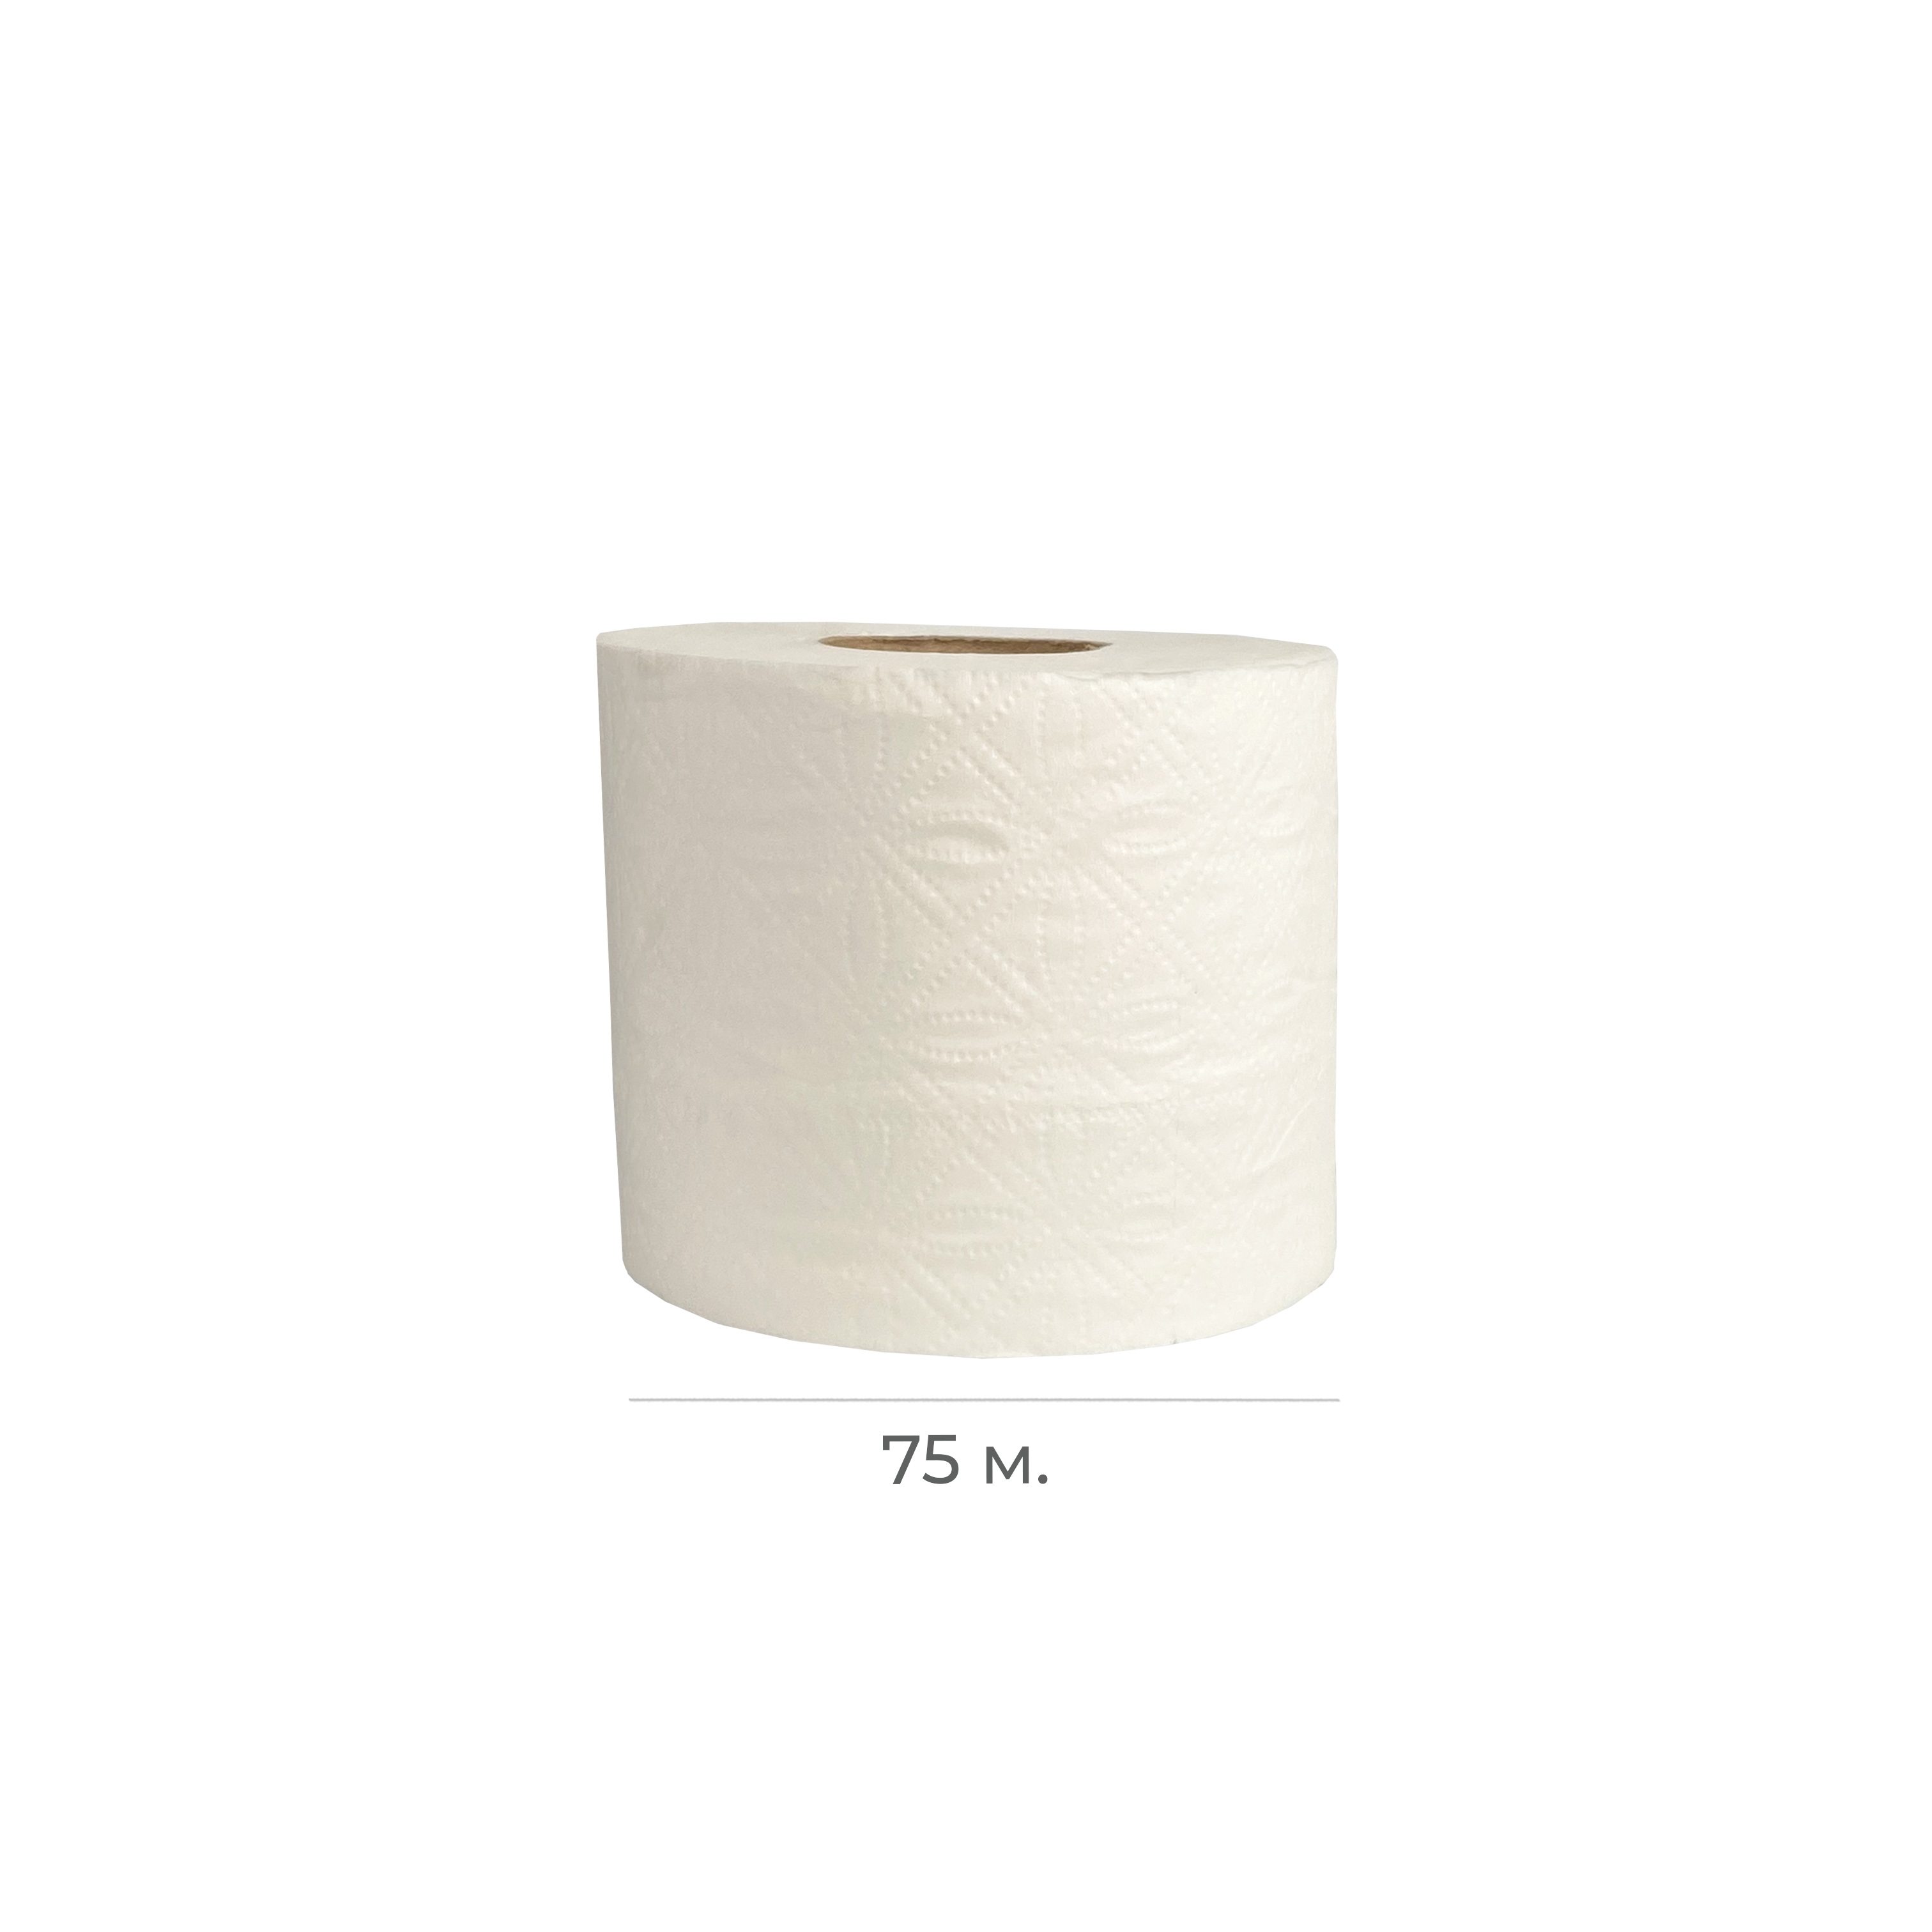 Туалетная бумага 2-сл 75м 2*16гр 90% б/перф NRB-210107 T2 (30)